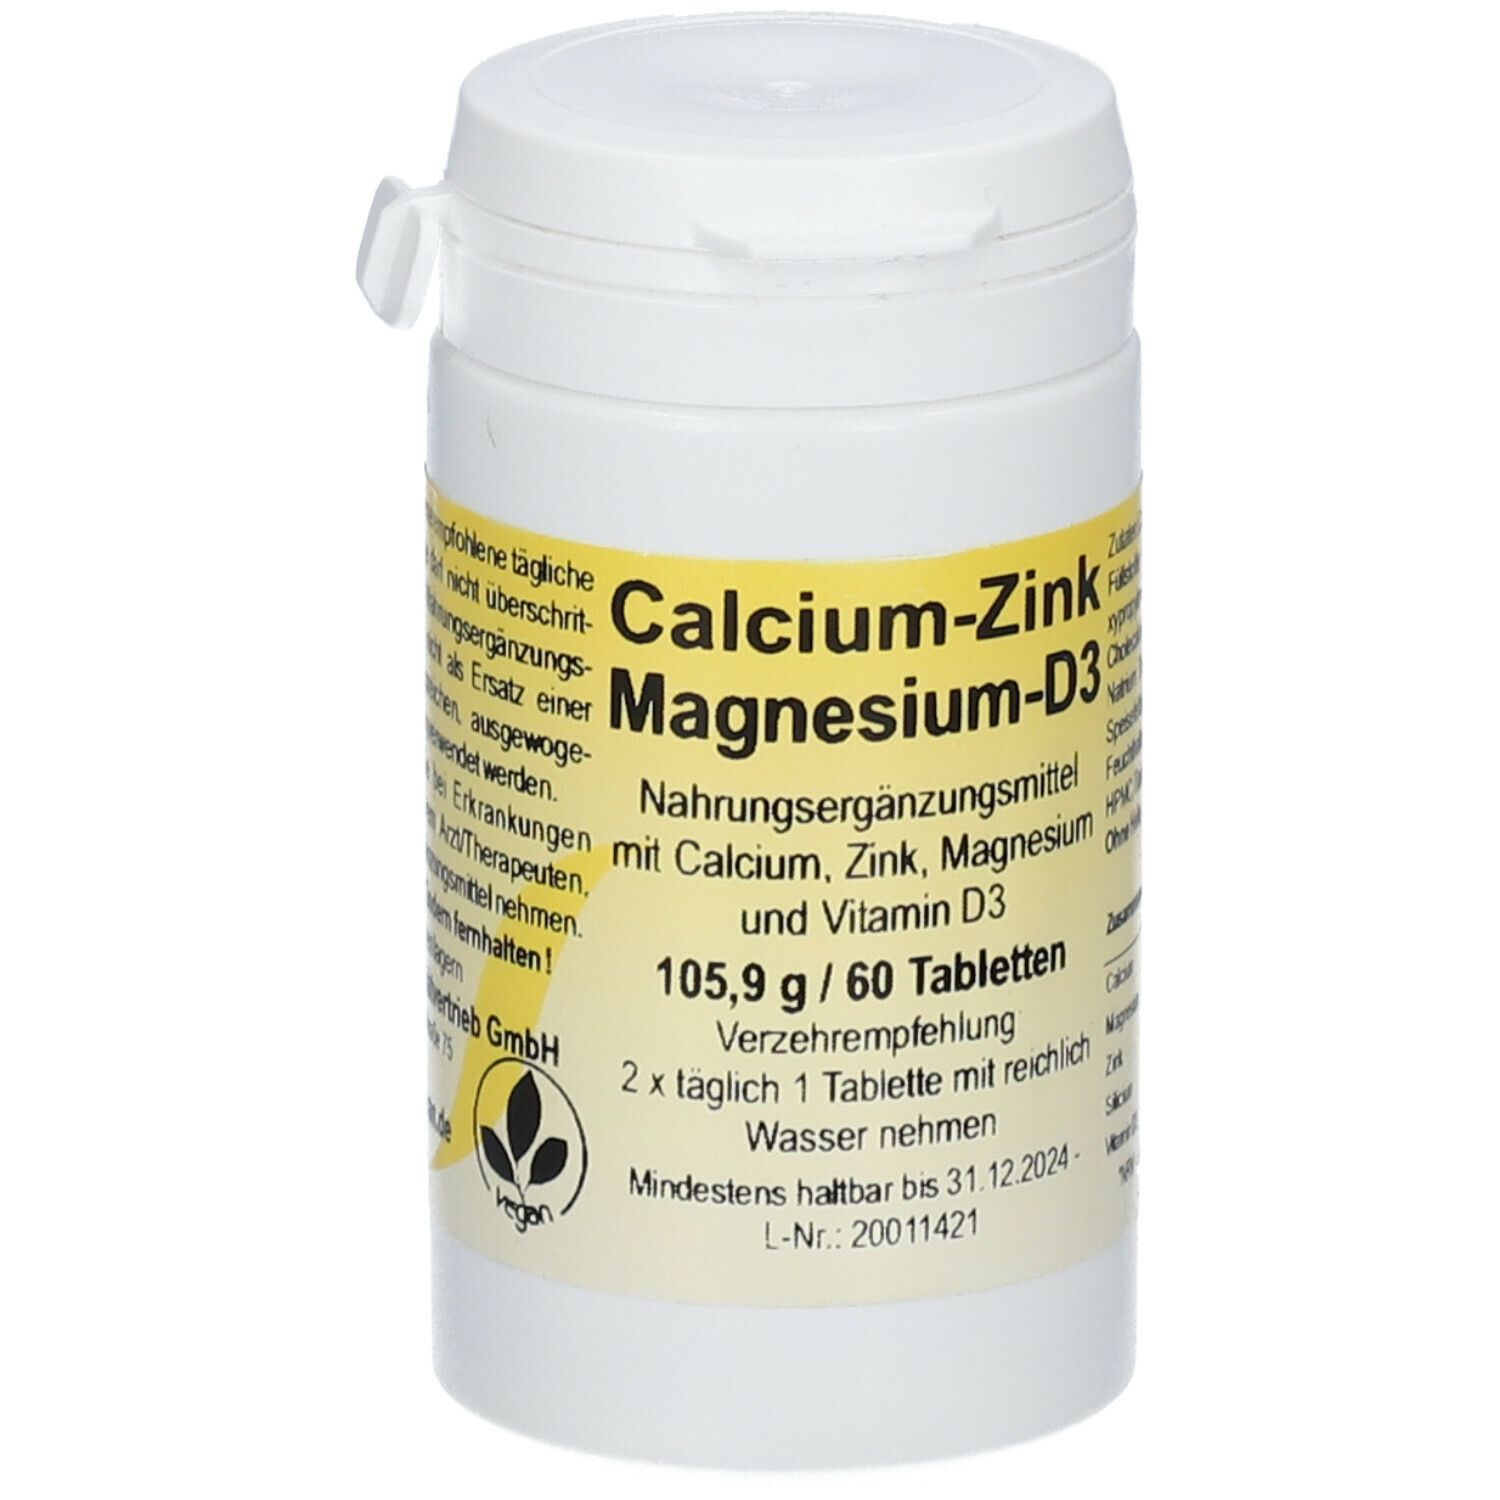 Calcium-Zink-Magnesium-D3